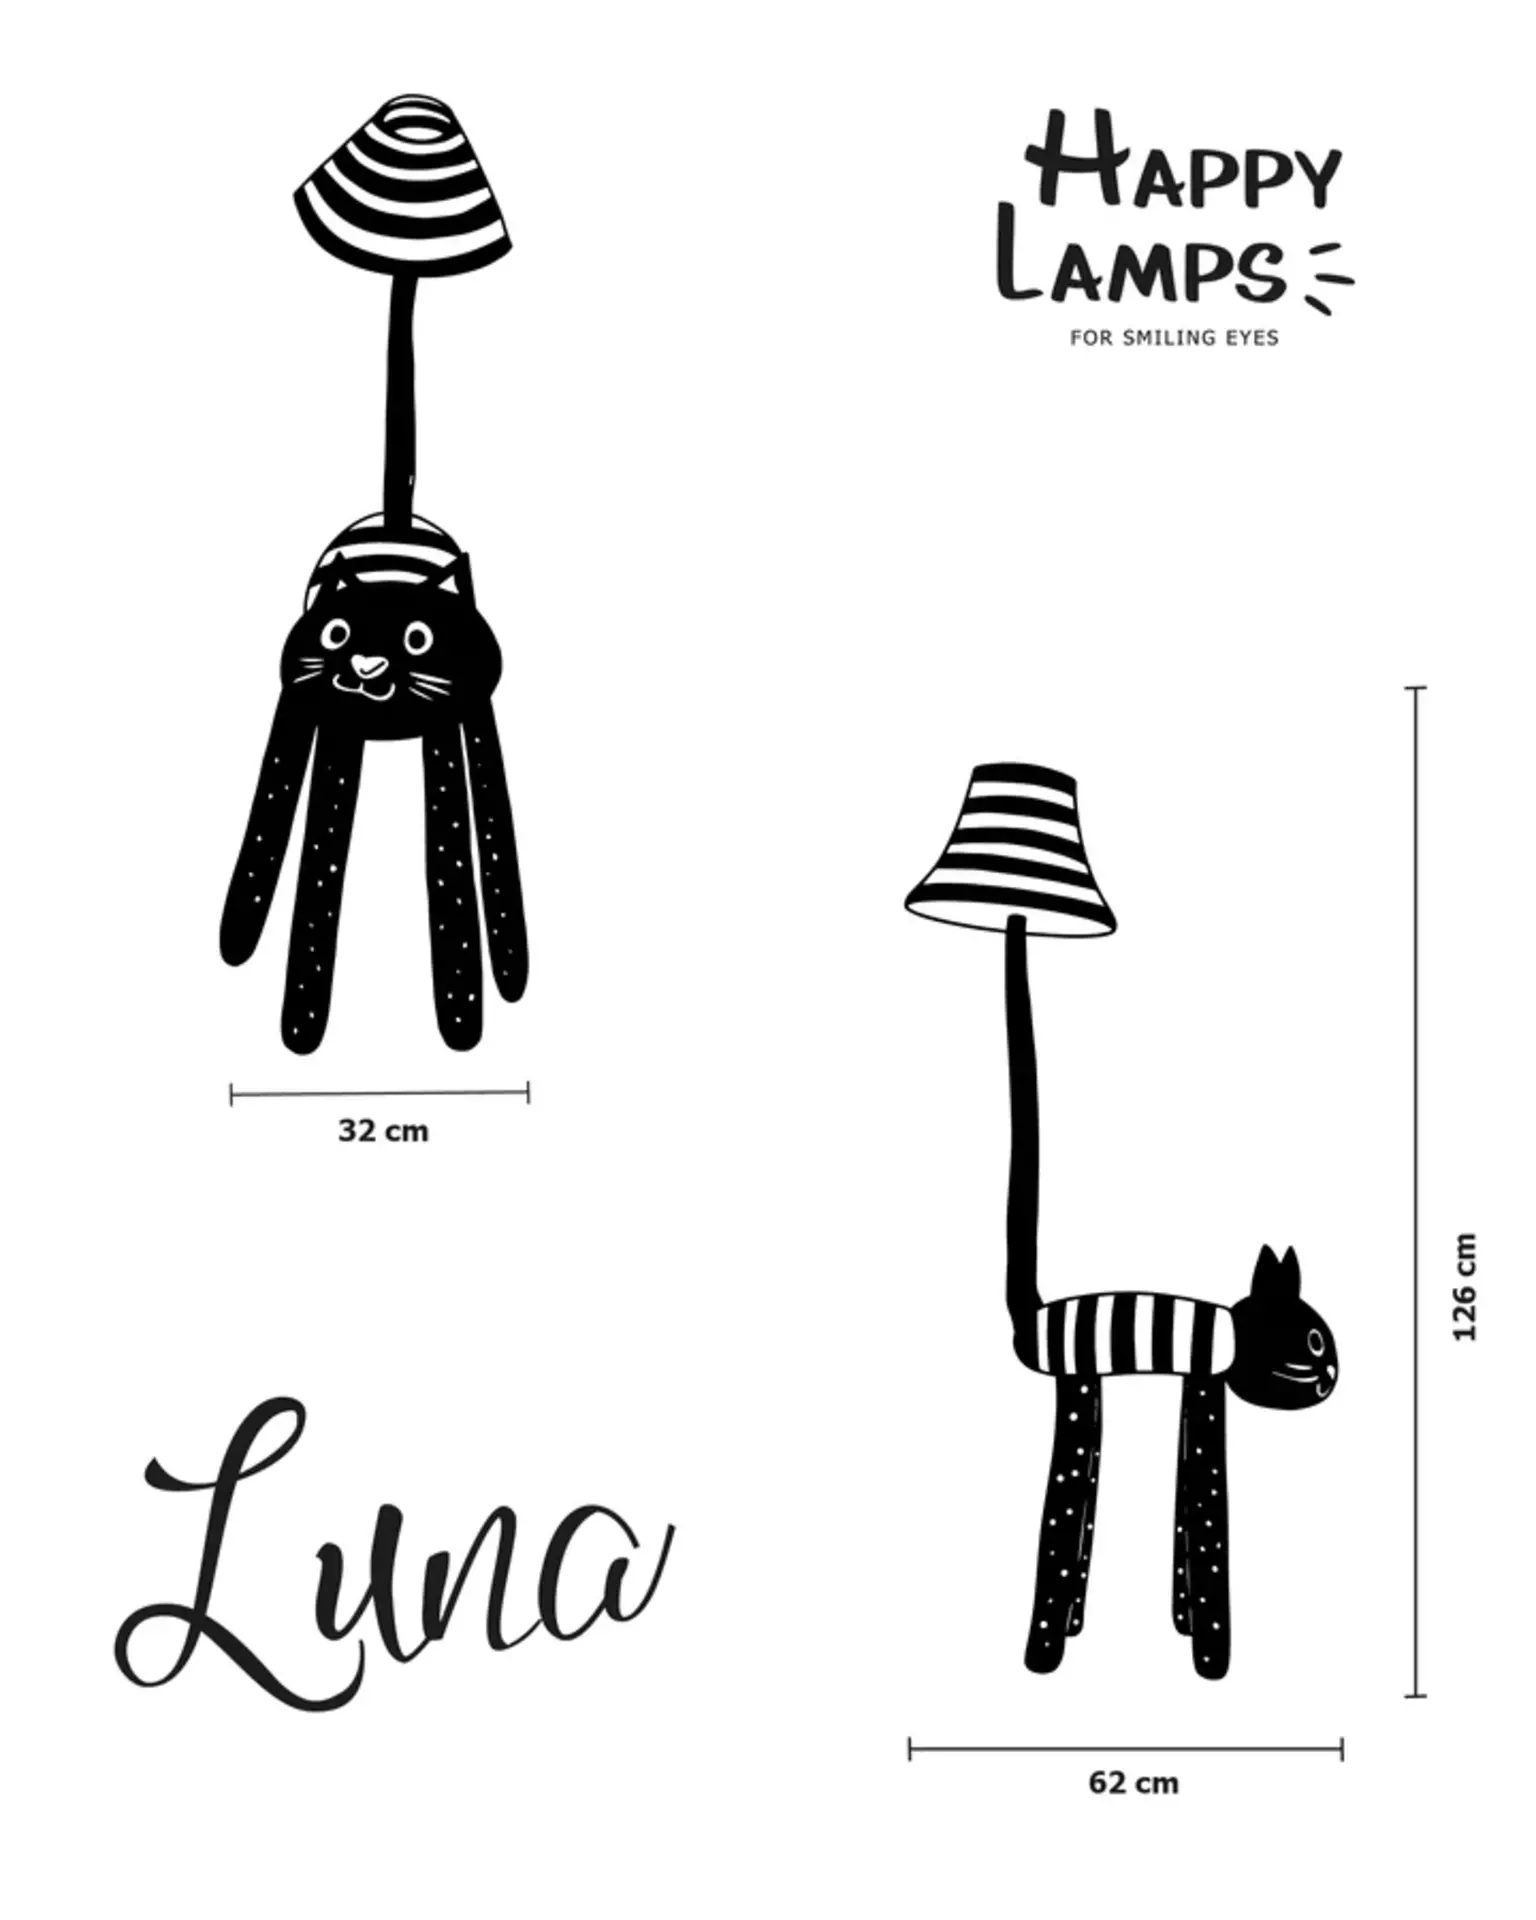 Stehleuchte LUNA Happy Lamps Textil 62 x 126 x 32 cm